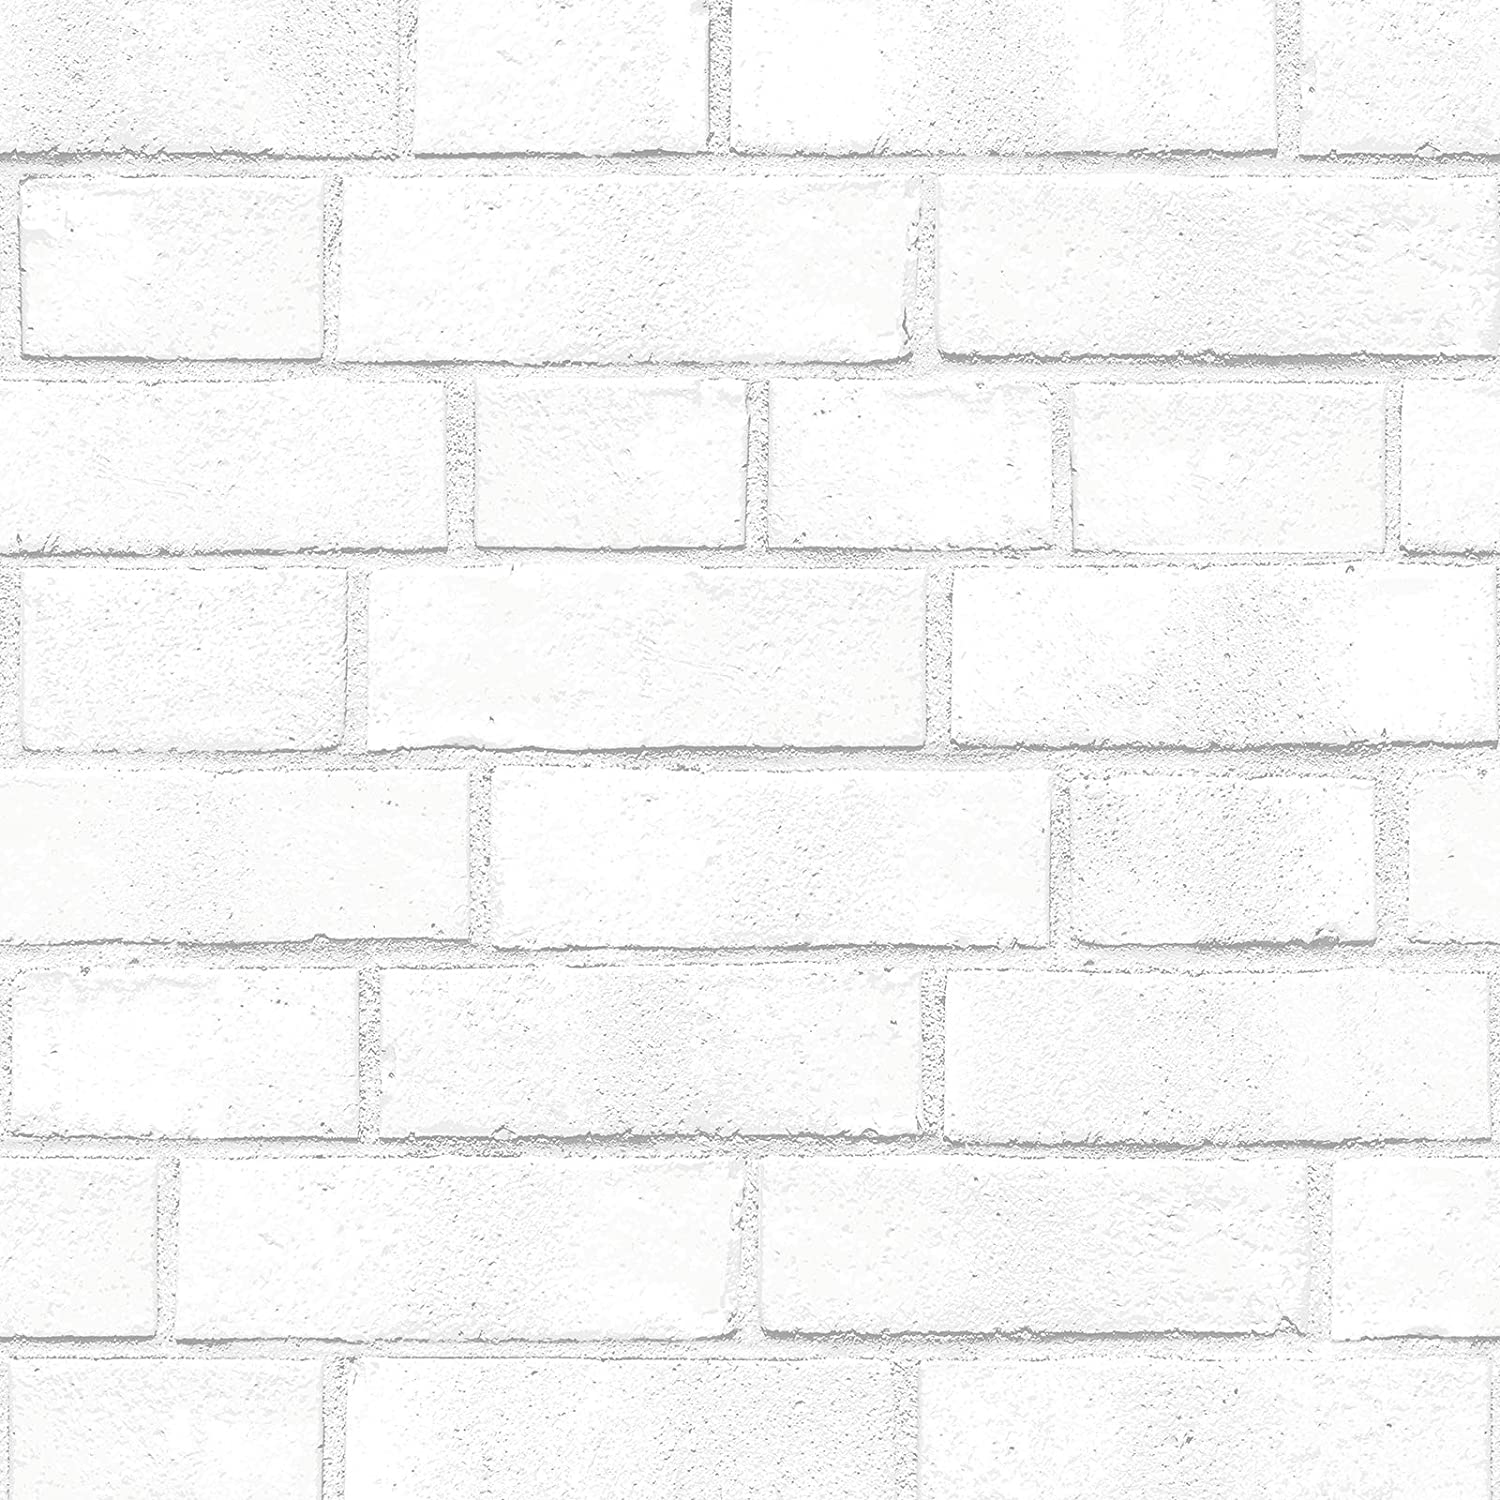  Ziegel Hintergrundbild 1500x1500. Tempaper Ziegel. Designer abnehmbare Schale und Stick Wallpaper Weiß 5x 5 : Amazon.de: Baumarkt